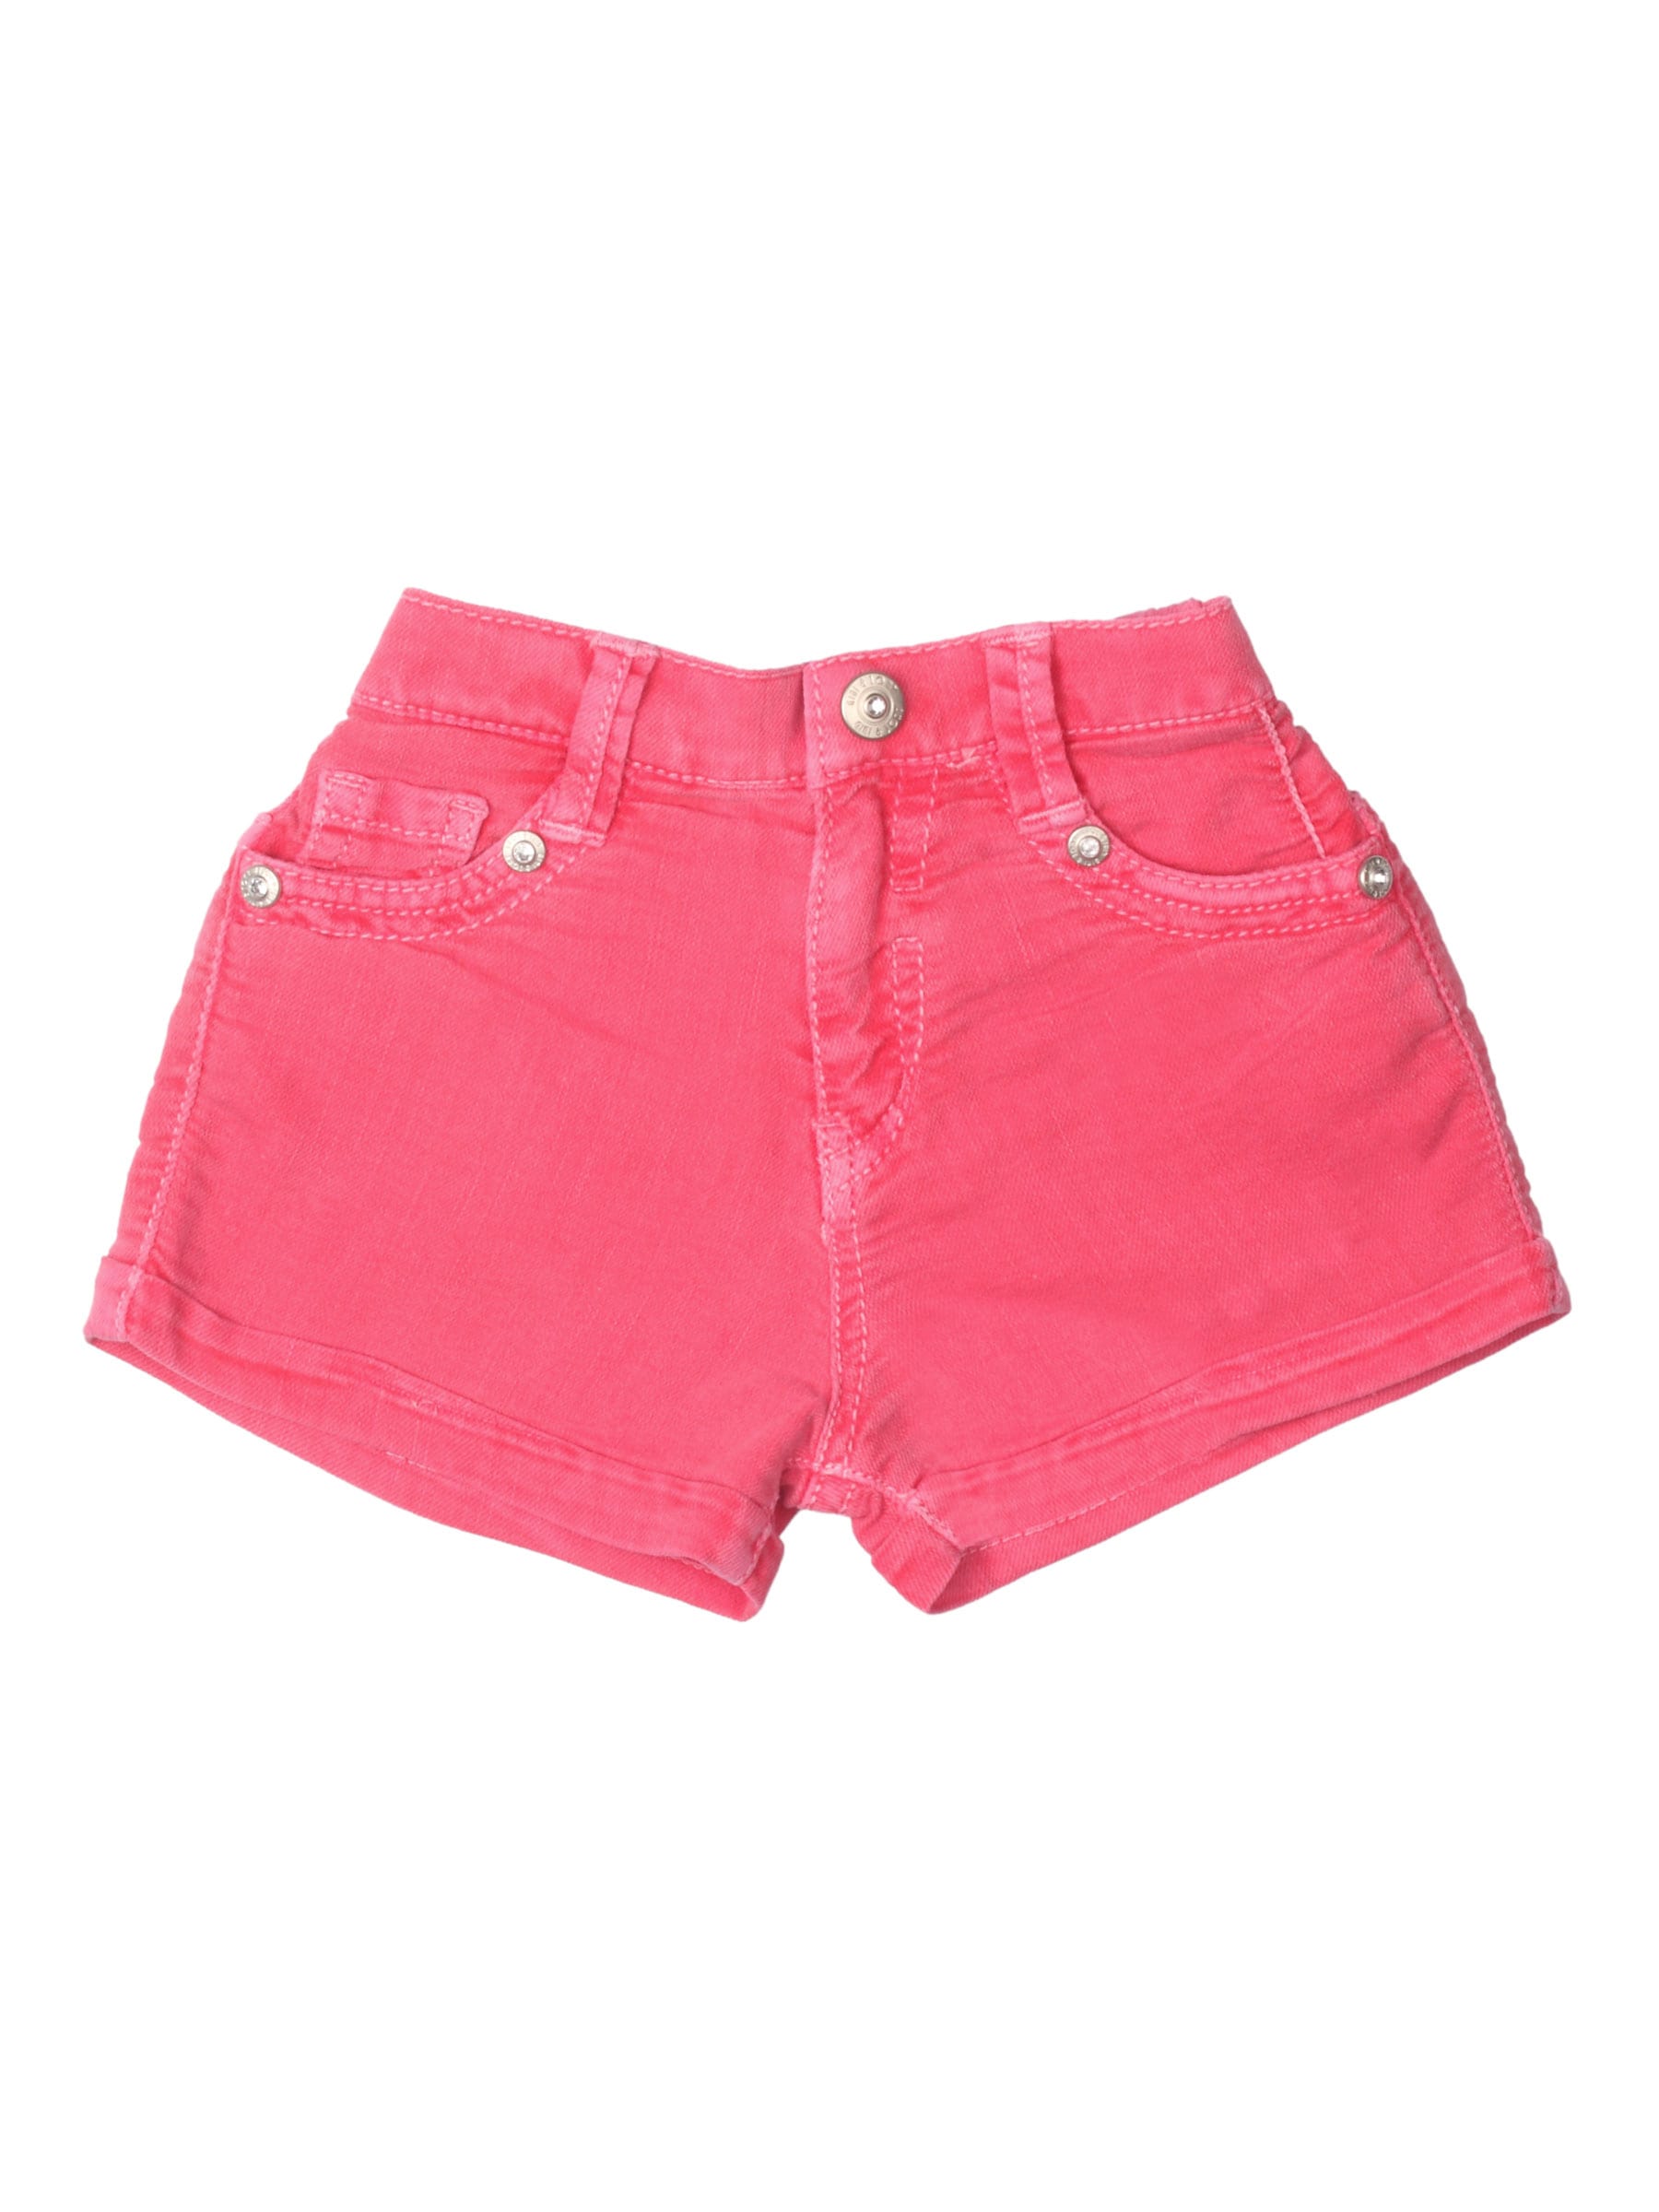 Gini and Jony Girls Pink Shorts